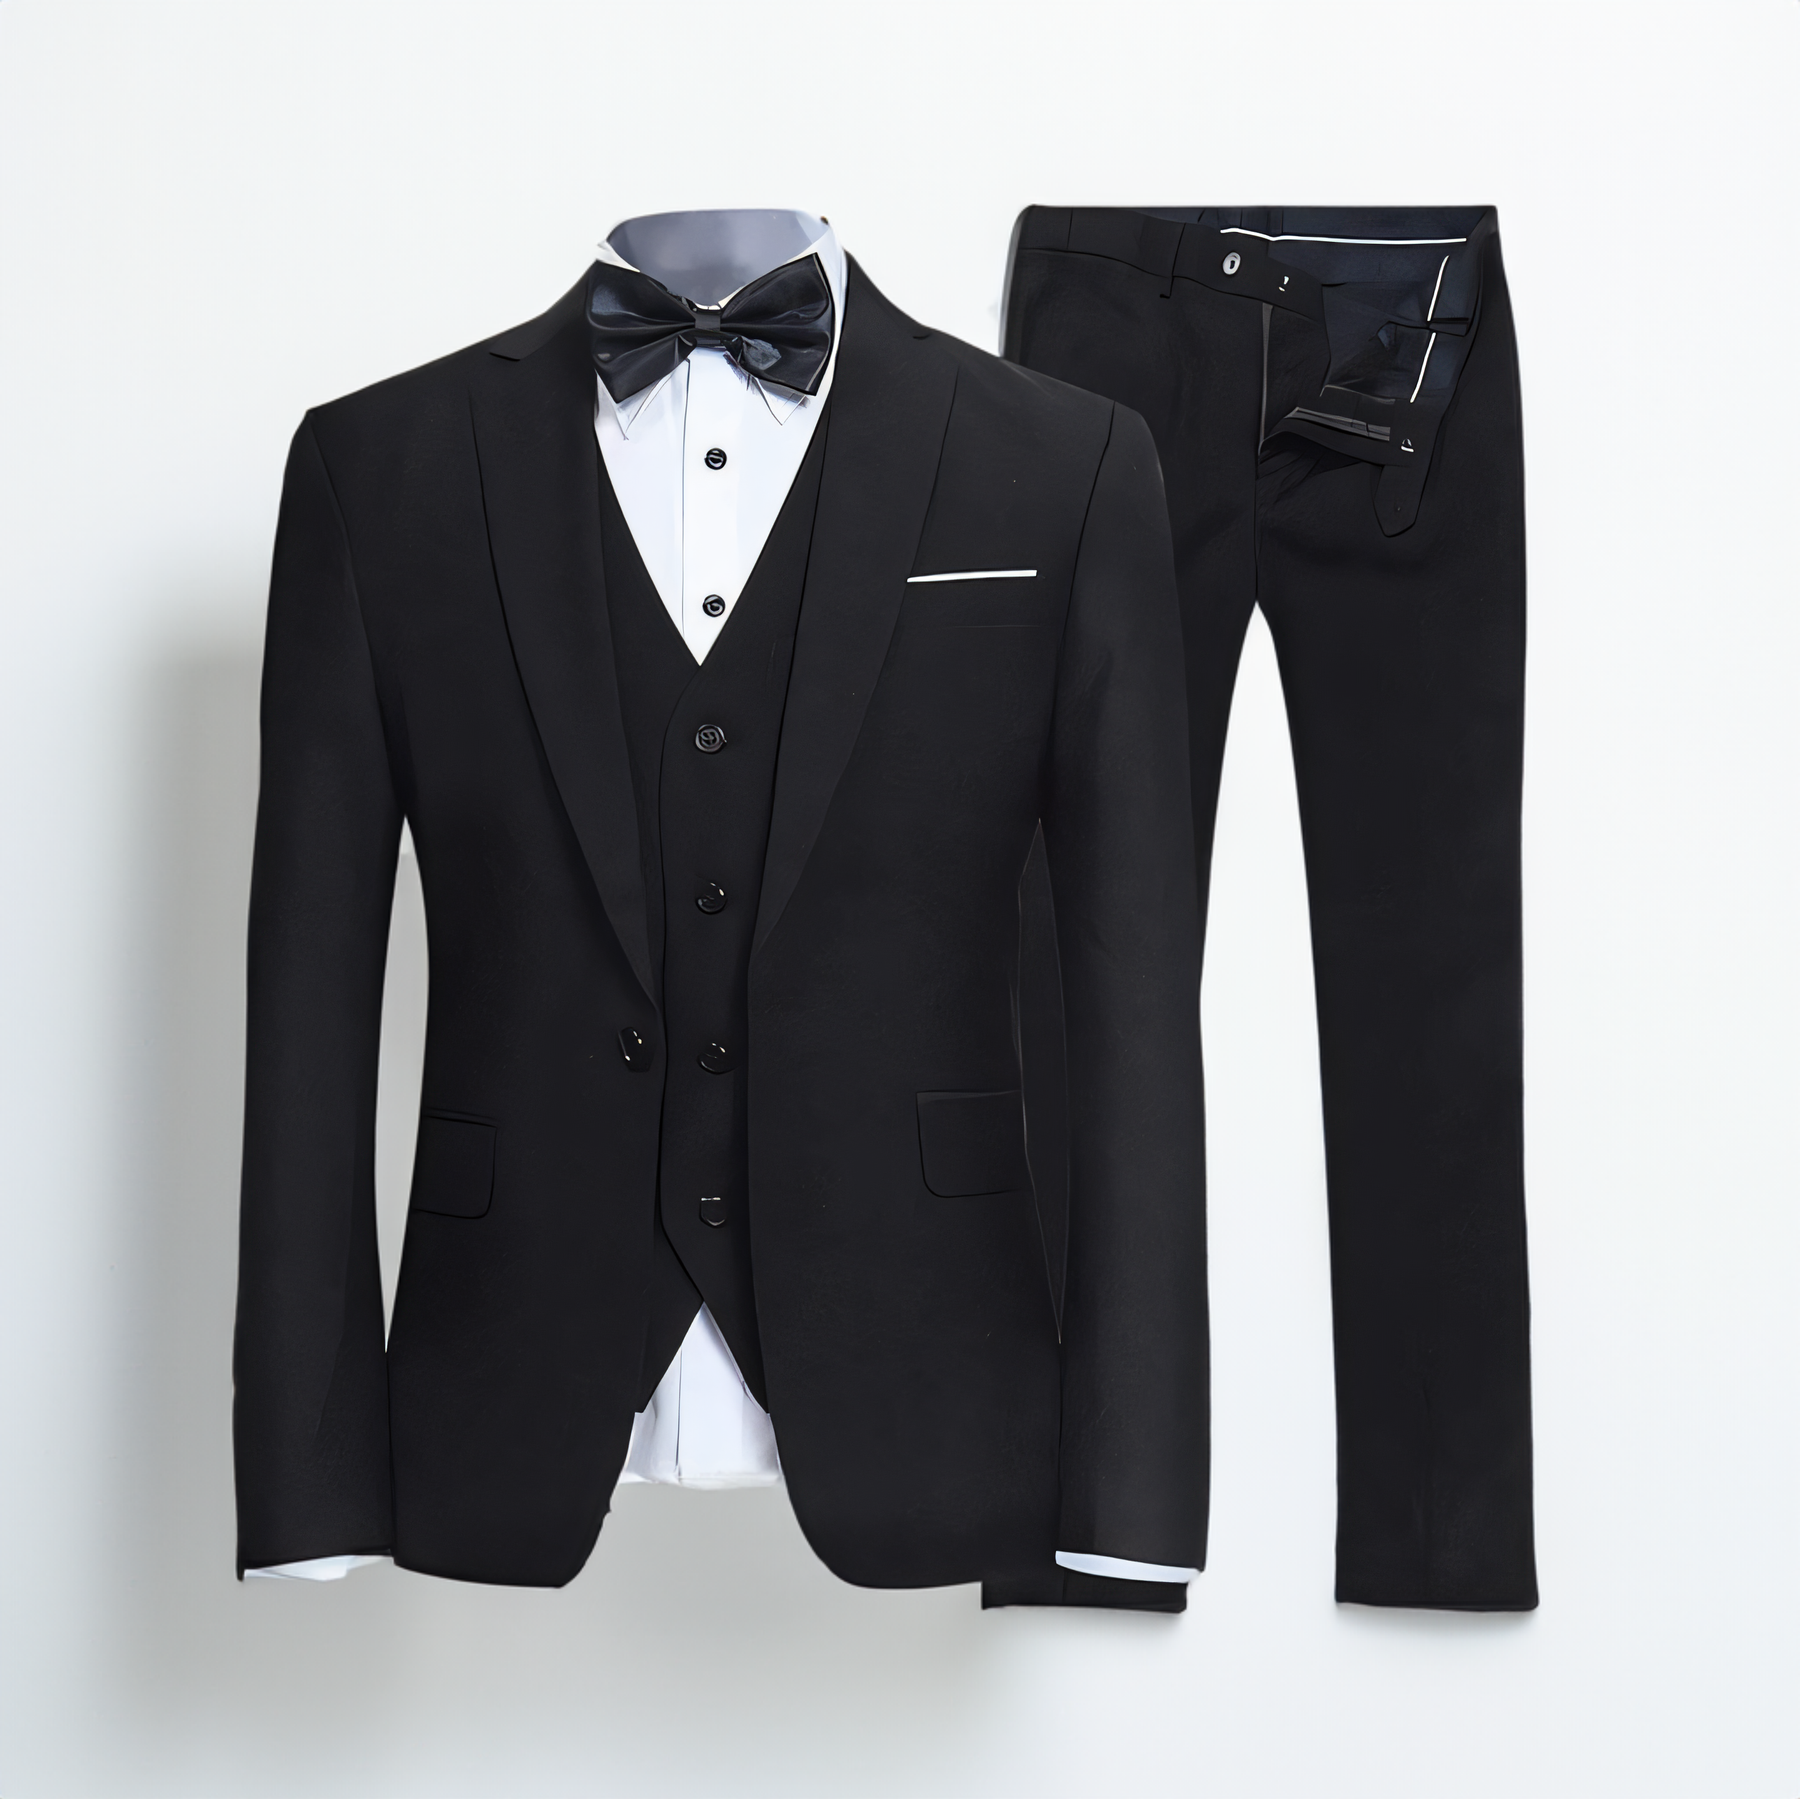 Formal 3 Piece Men's Suit Slim Fit Solid Peak Lapel Suit